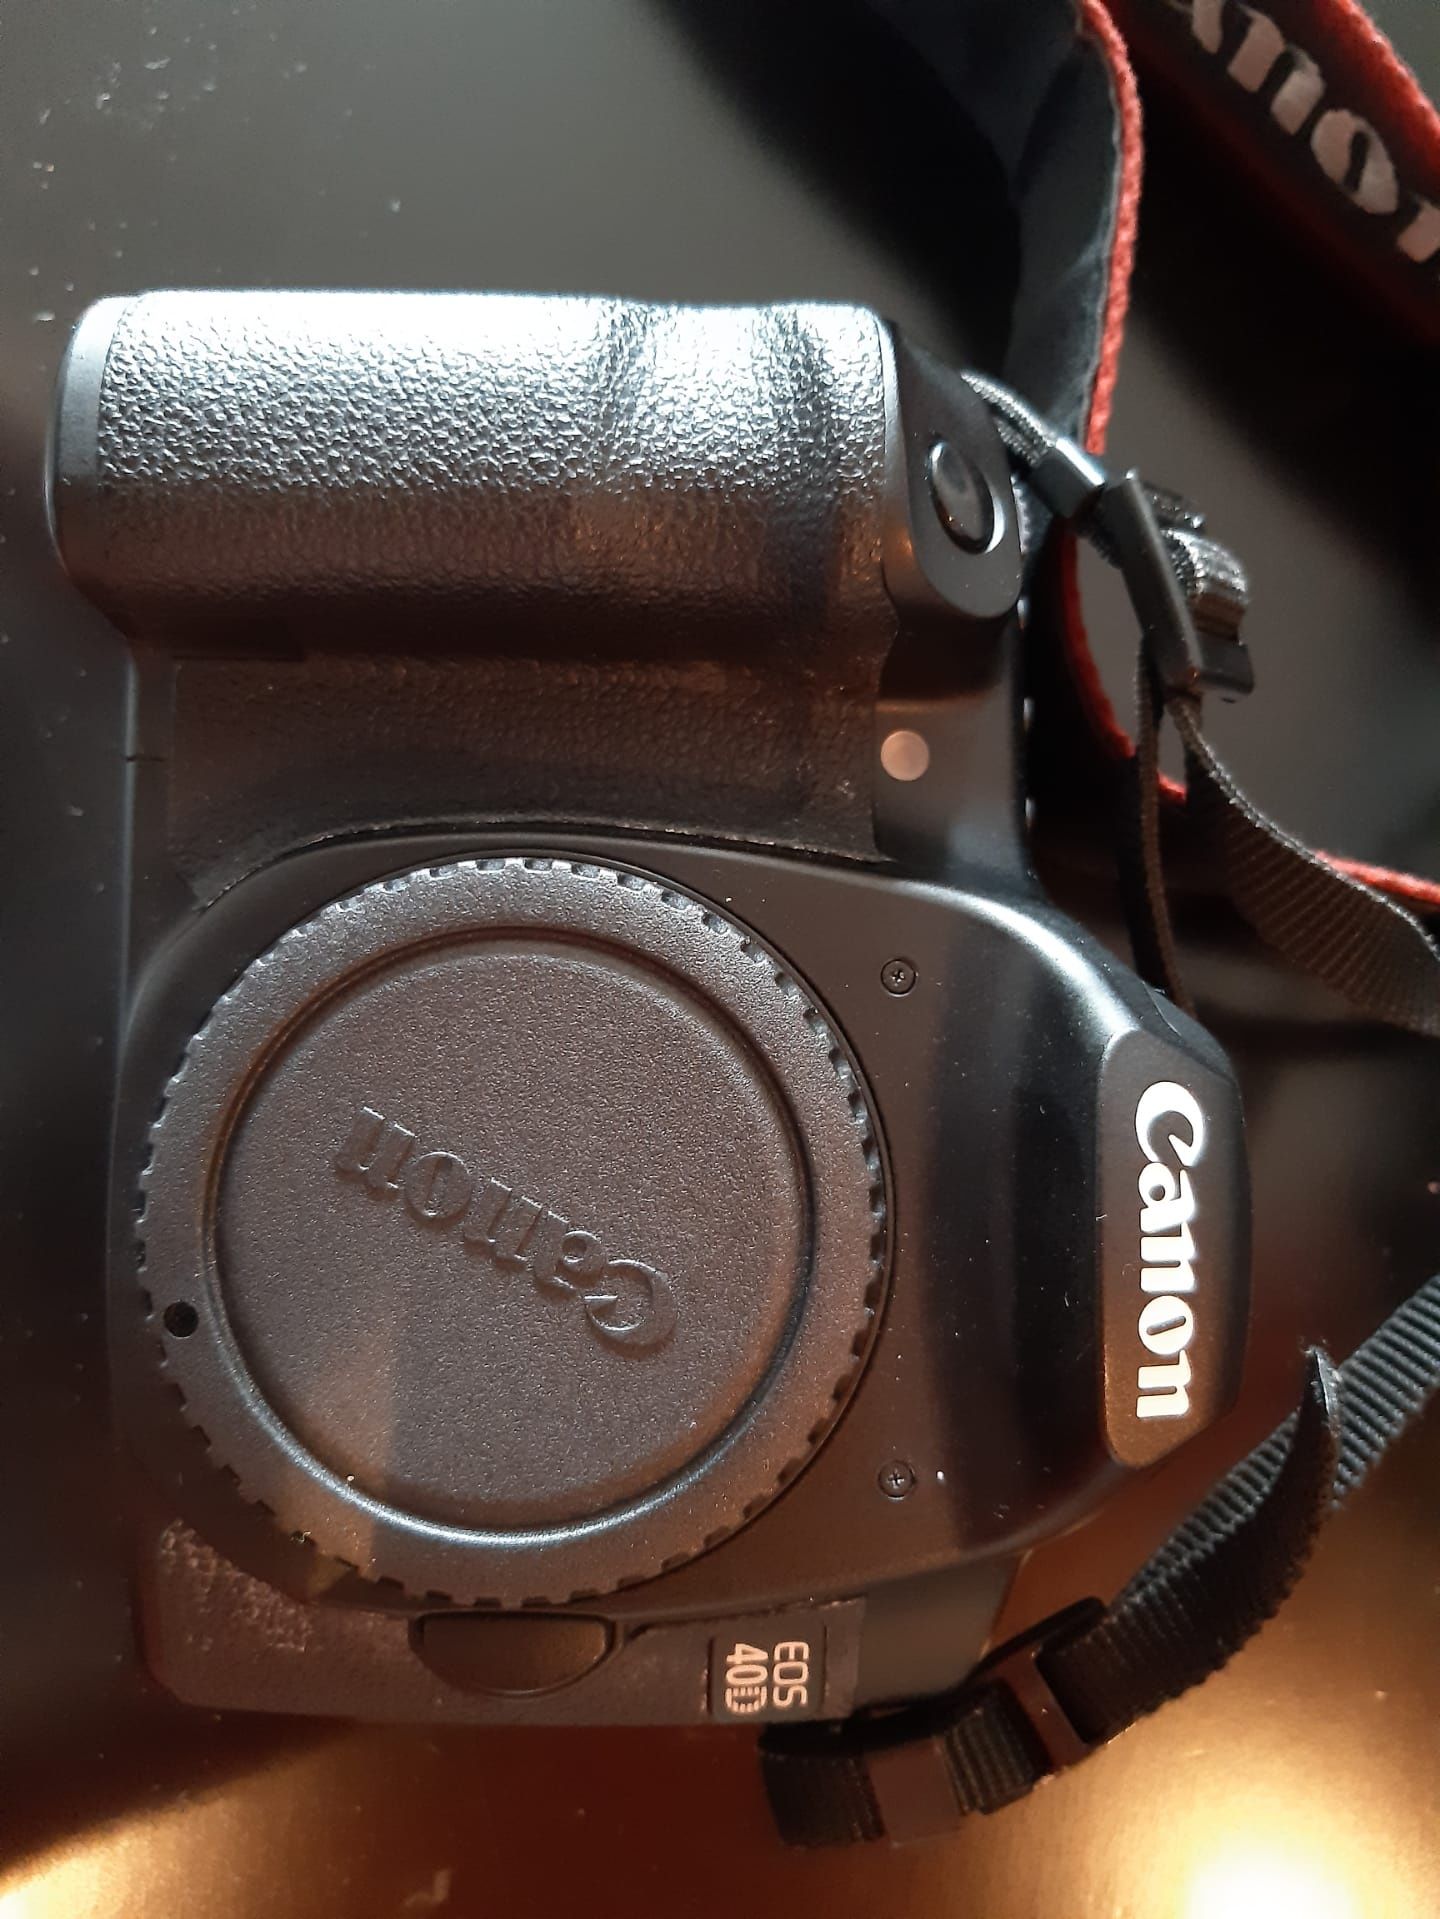 Máquina fotográfica Canon 40D (novo preço)